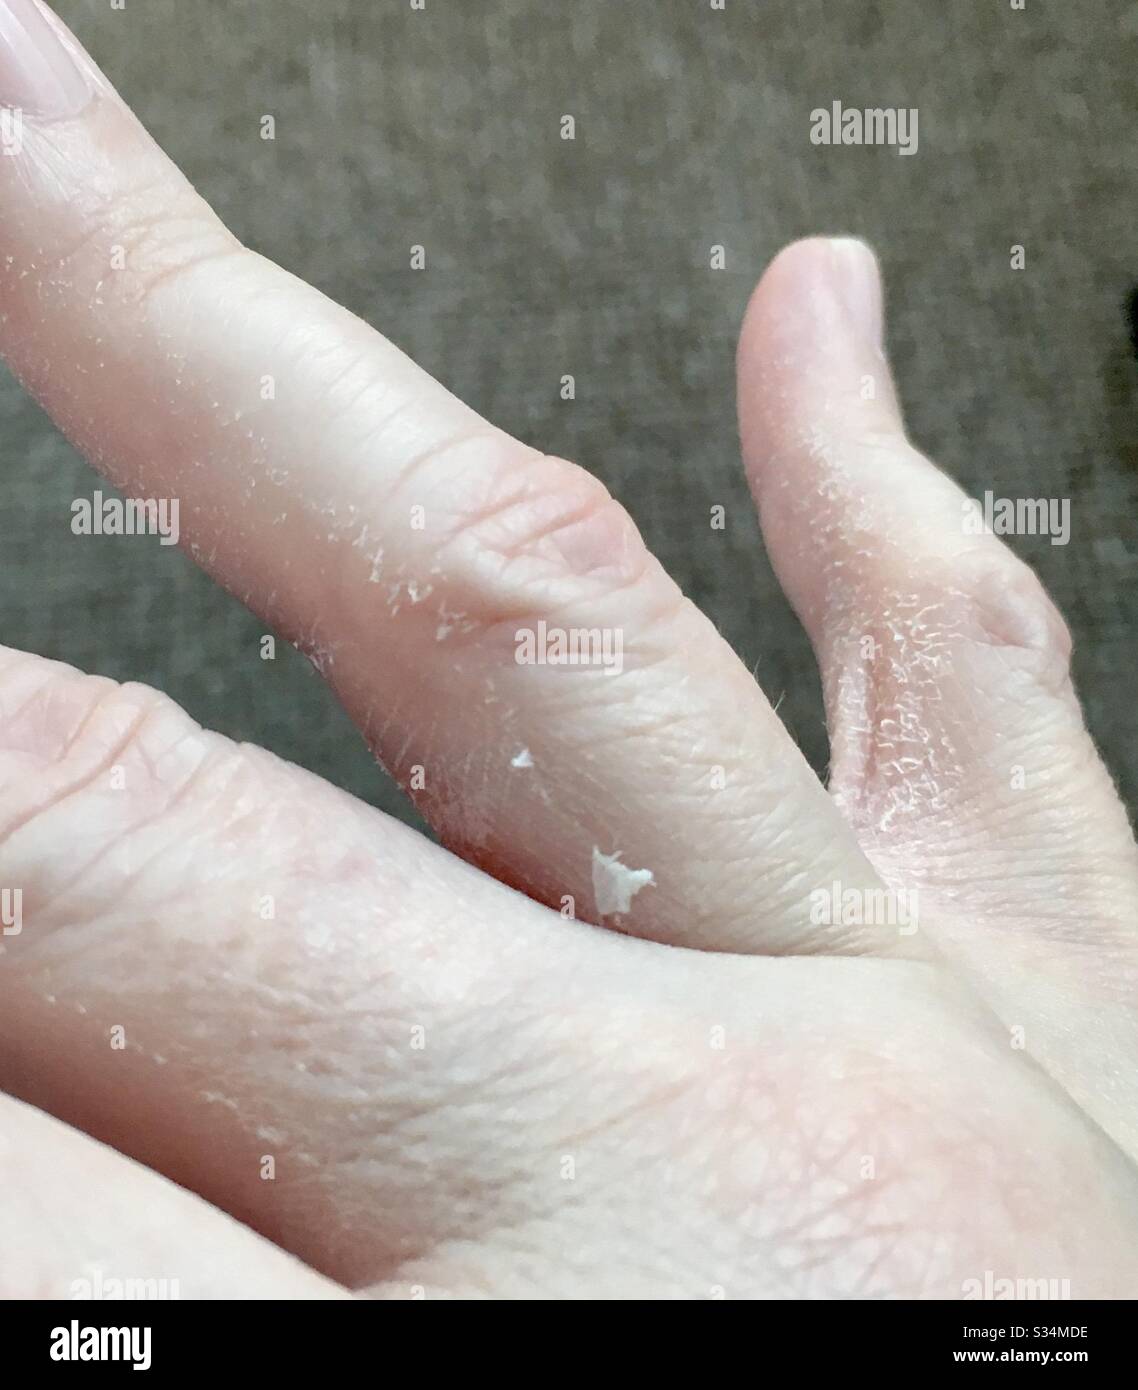 Malattia autoimmune - peeling mani irritato da lavaggio a mano durante covid19 Coronavirus focolaio Foto Stock